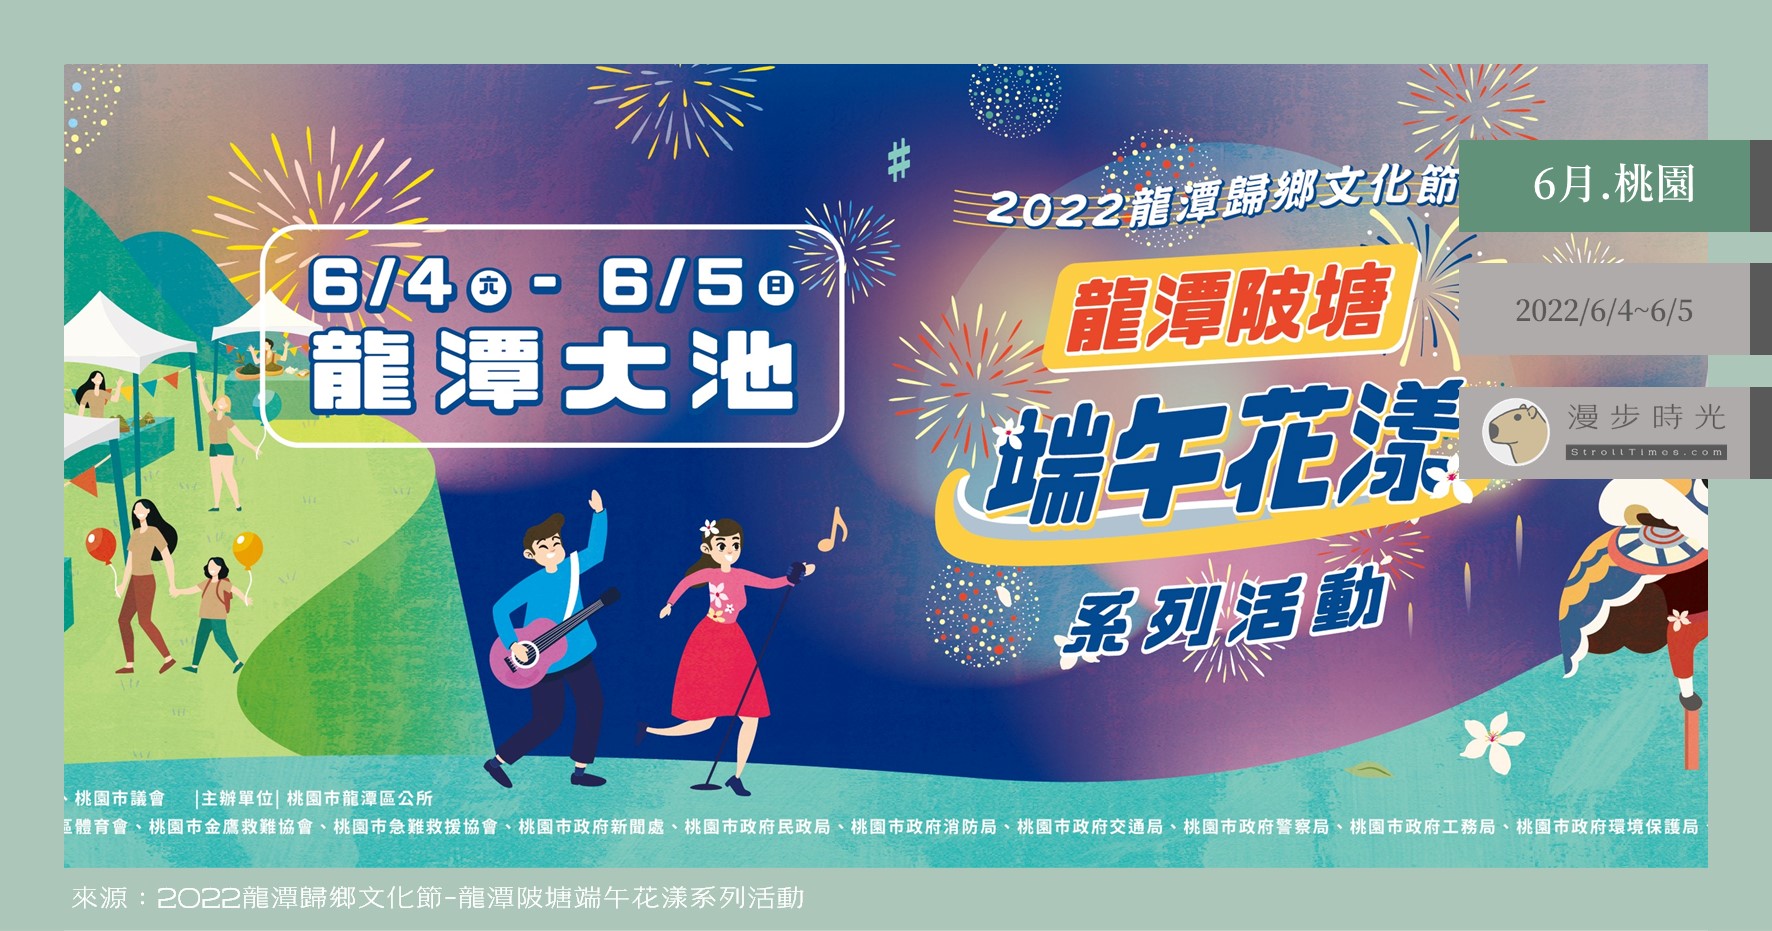 【桃園活動】2022龍潭歸鄉文化節，HAKA音樂會17組藝人與團體表演、超熱血水上舞龍舞獅競賽